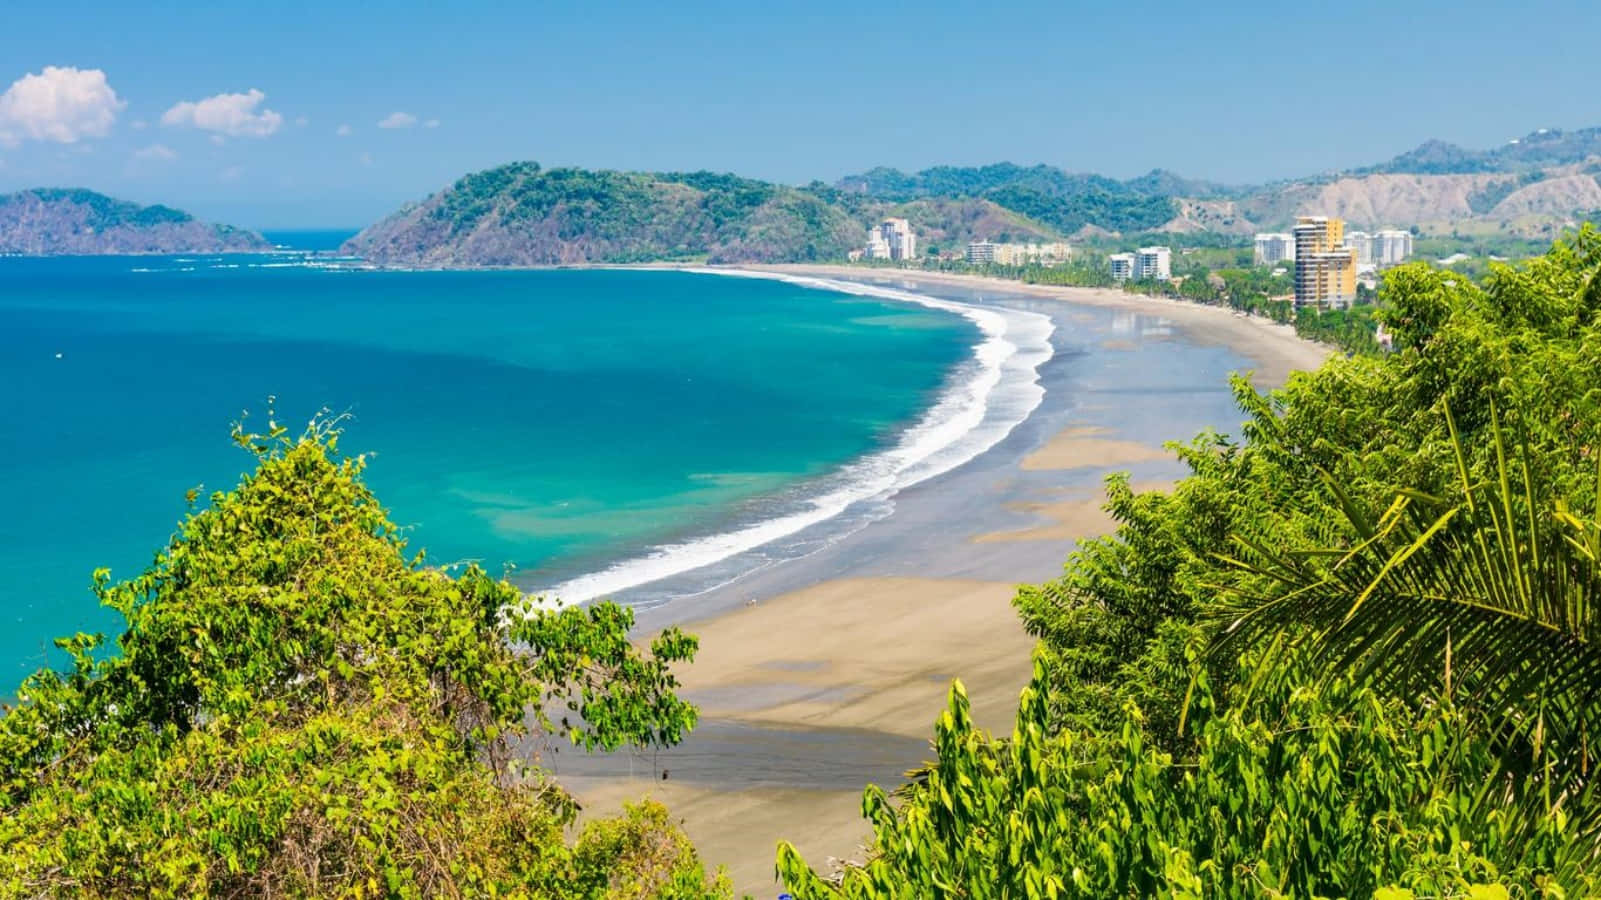 Njutav En Semester I Paradiset I Vackra Costa Rica